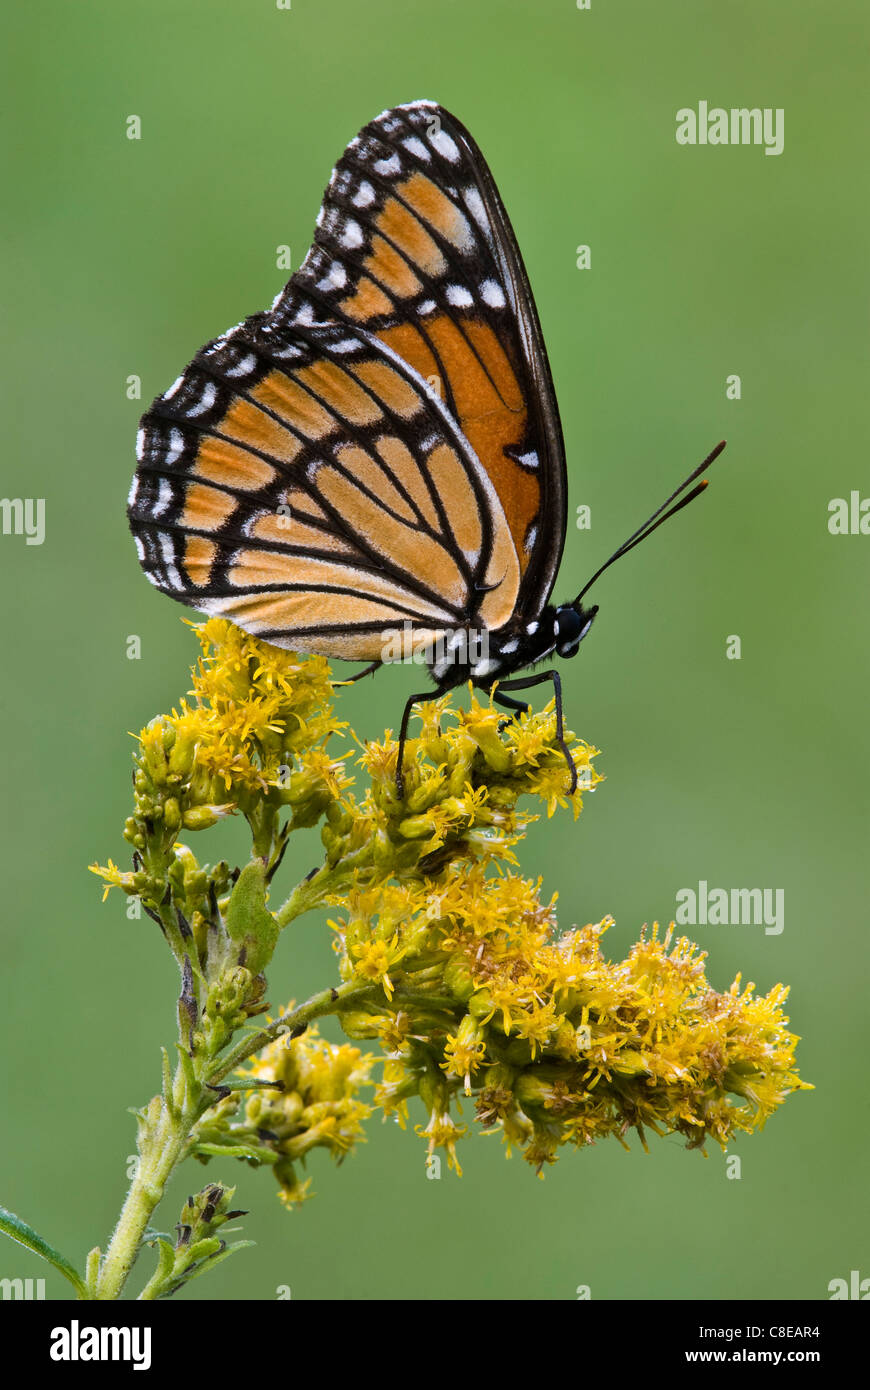 Il Viceroy Butterfly (Limenitis archippus) su oro (Solidago sps), fine estate, inizio autunno, E STATI UNITI D'AMERICA, da saltare Moody/Dembinsky Foto Assoc Foto Stock